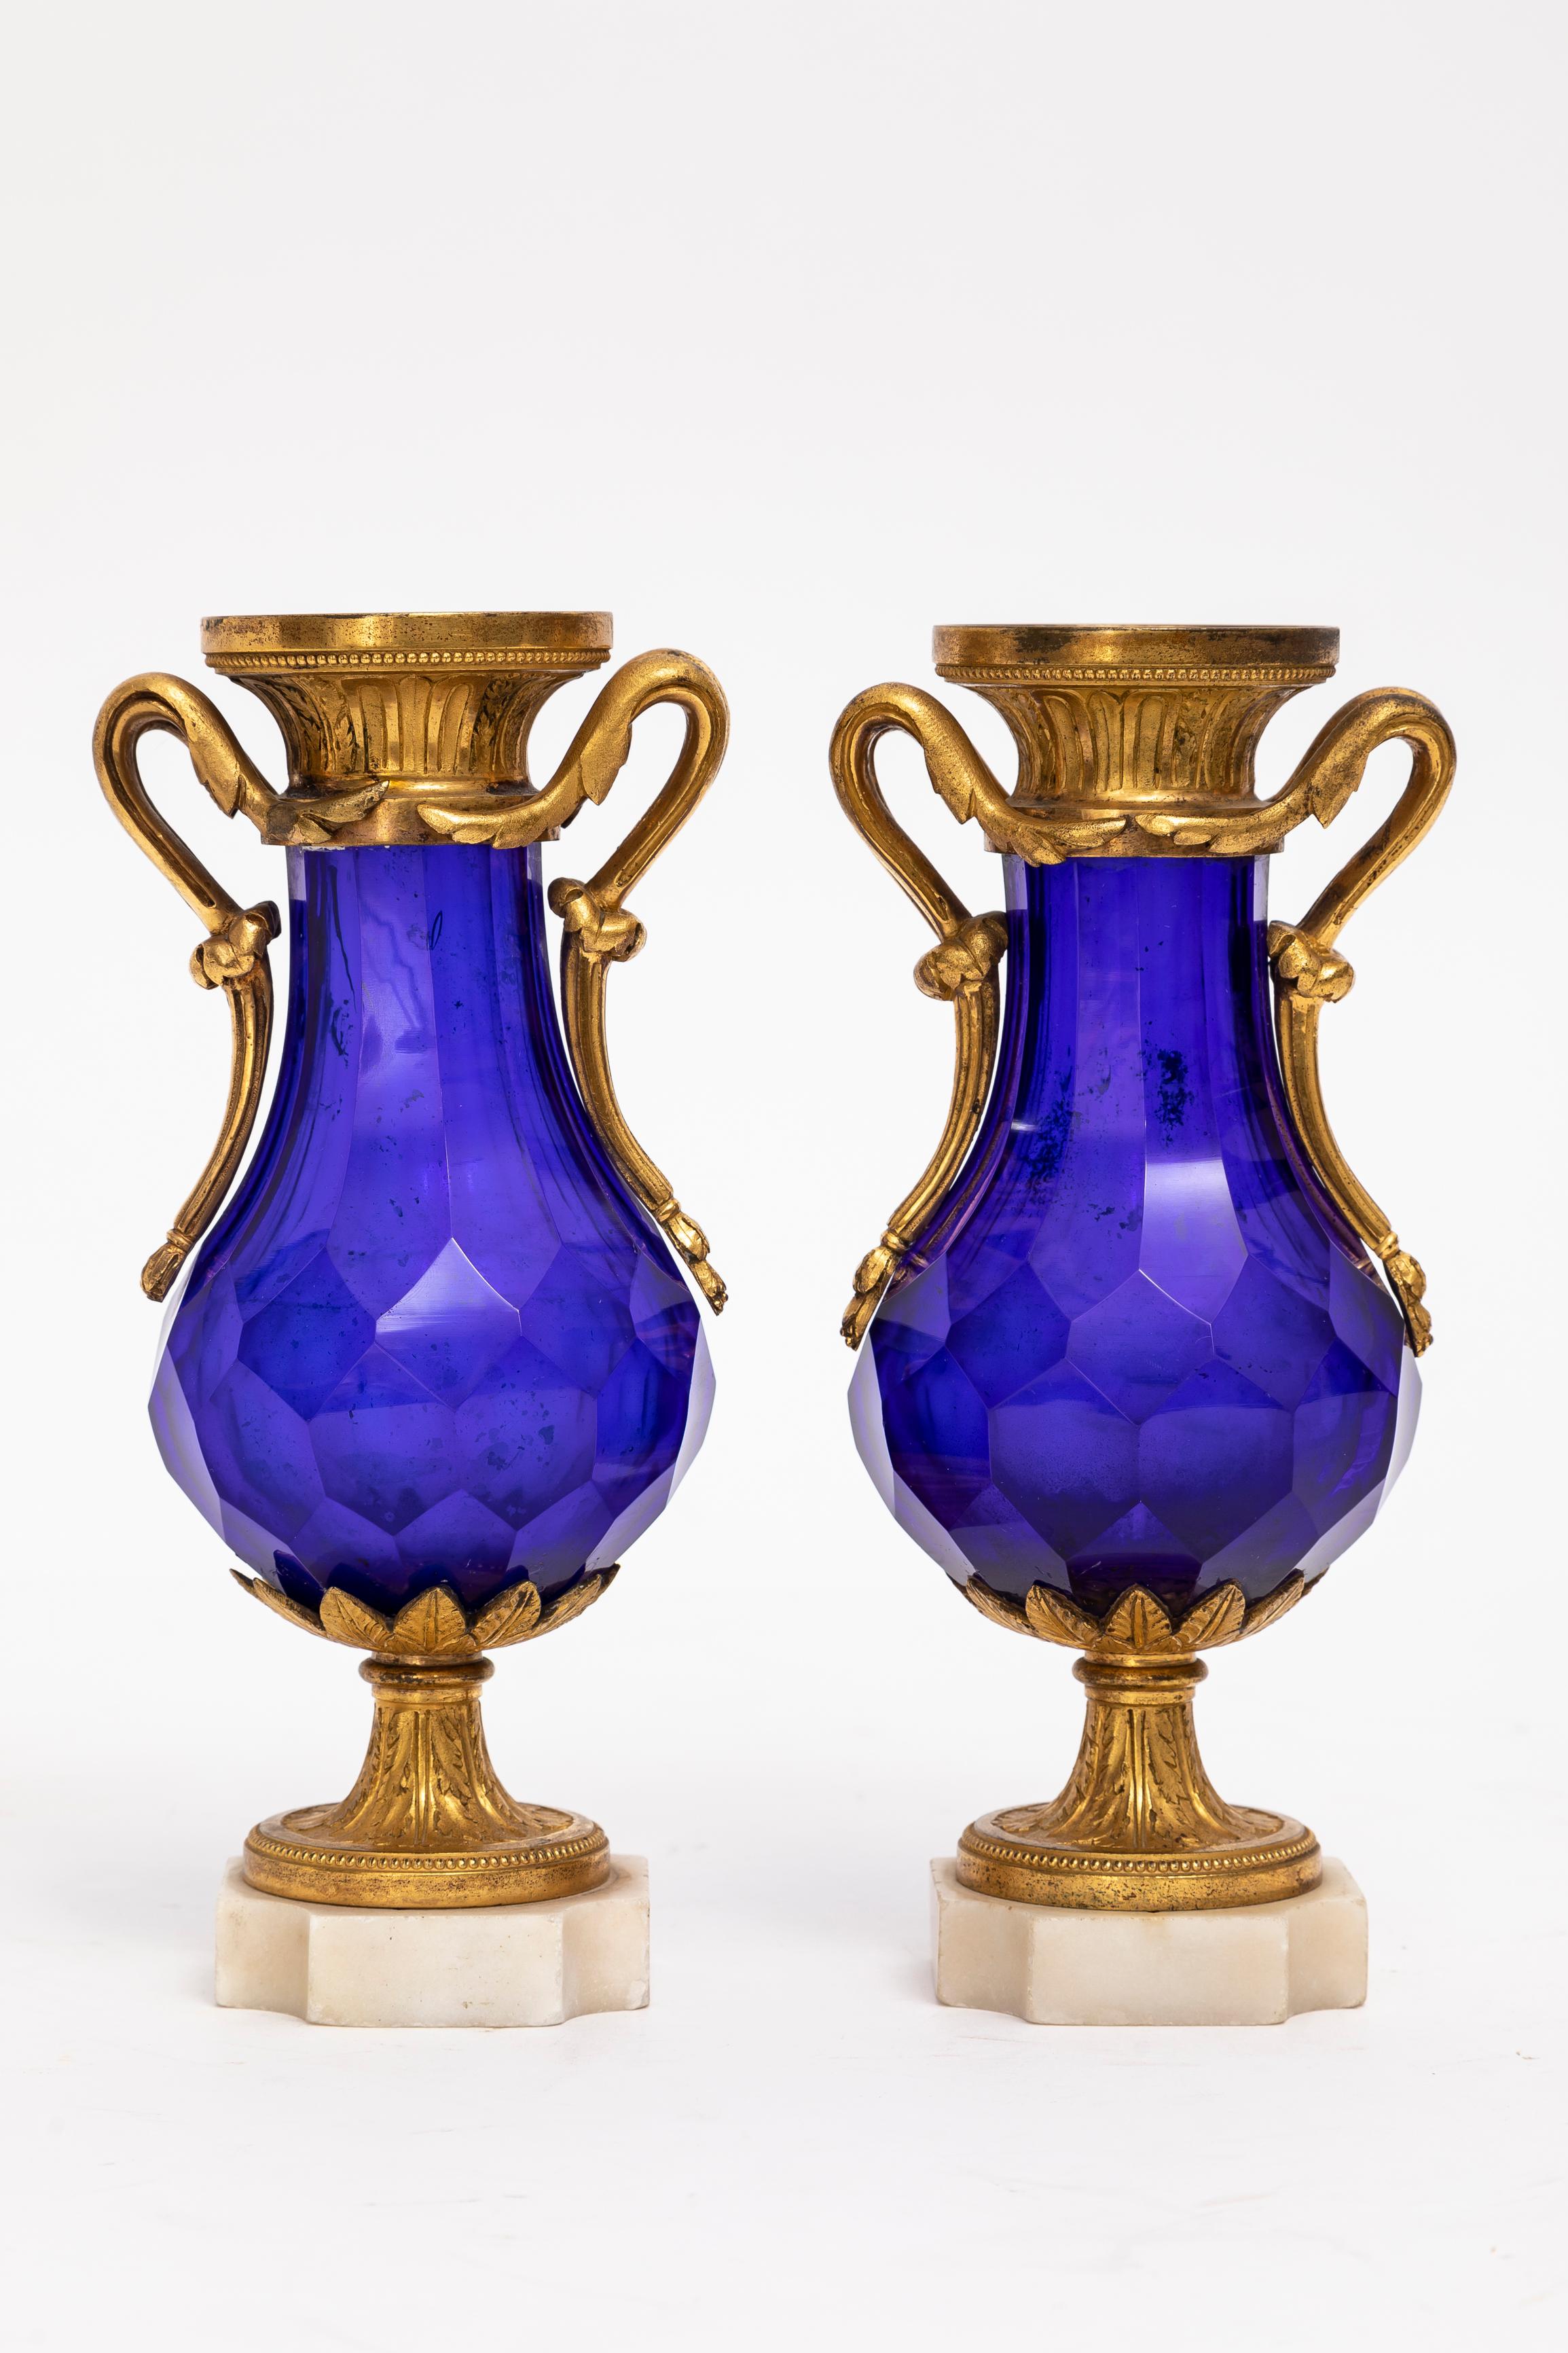 Magnifique paire de vases russes montés en cristal bleu cobalt et en bronze doré, d'époque Louis XVI. Chacun de ces vases témoigne du plus haut niveau d'artisanat et d'excellence artistique. Le cristal bleu cobalt est un point focal captivant,